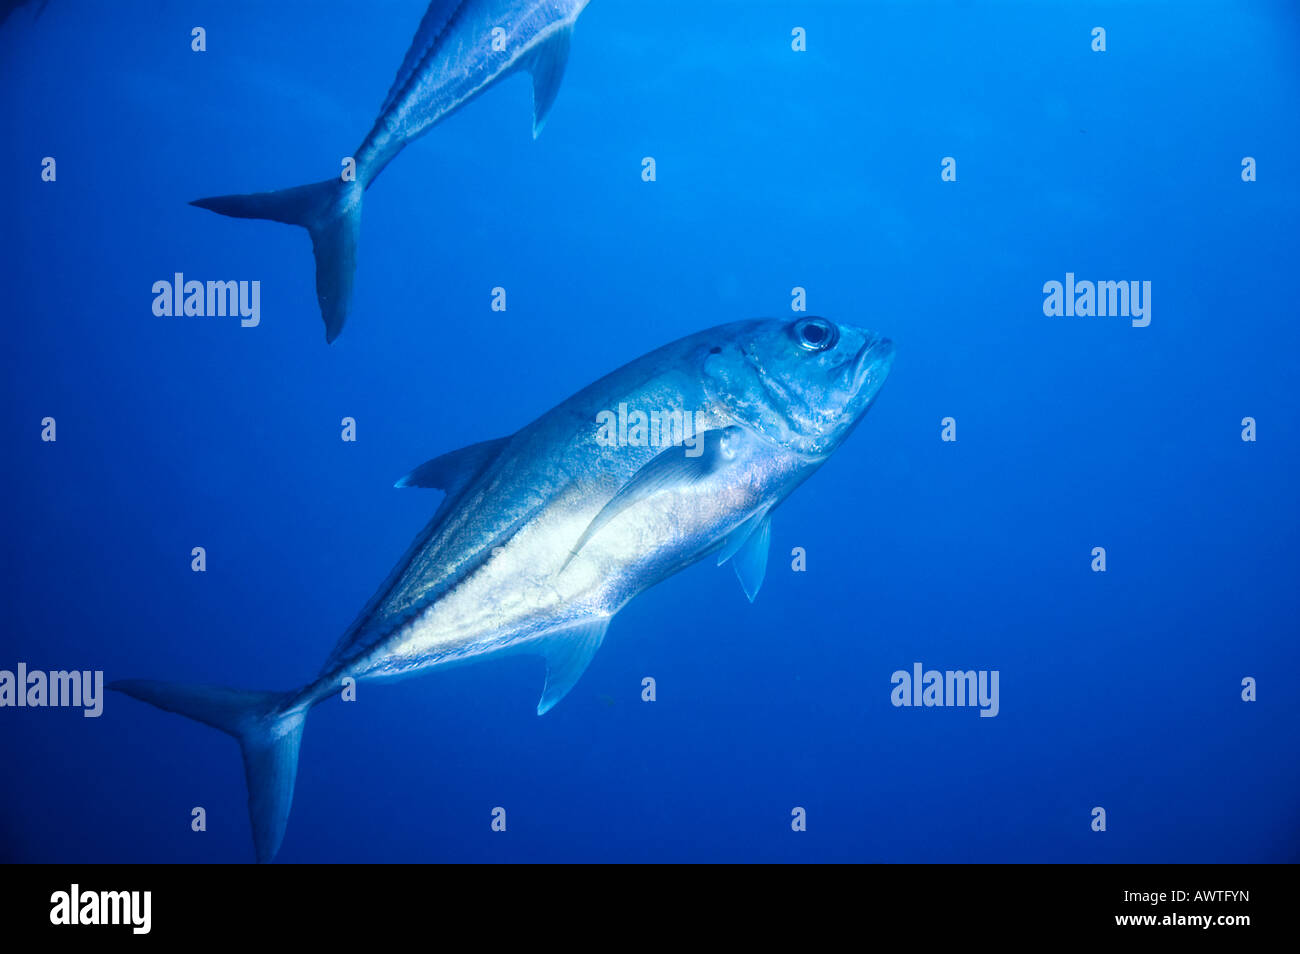 Silber Jack Großaugenthun Trevally Fischen oder Cranx Sexfasciatus im blauen Wasser des Great Barrier Reef Australien Stockfoto